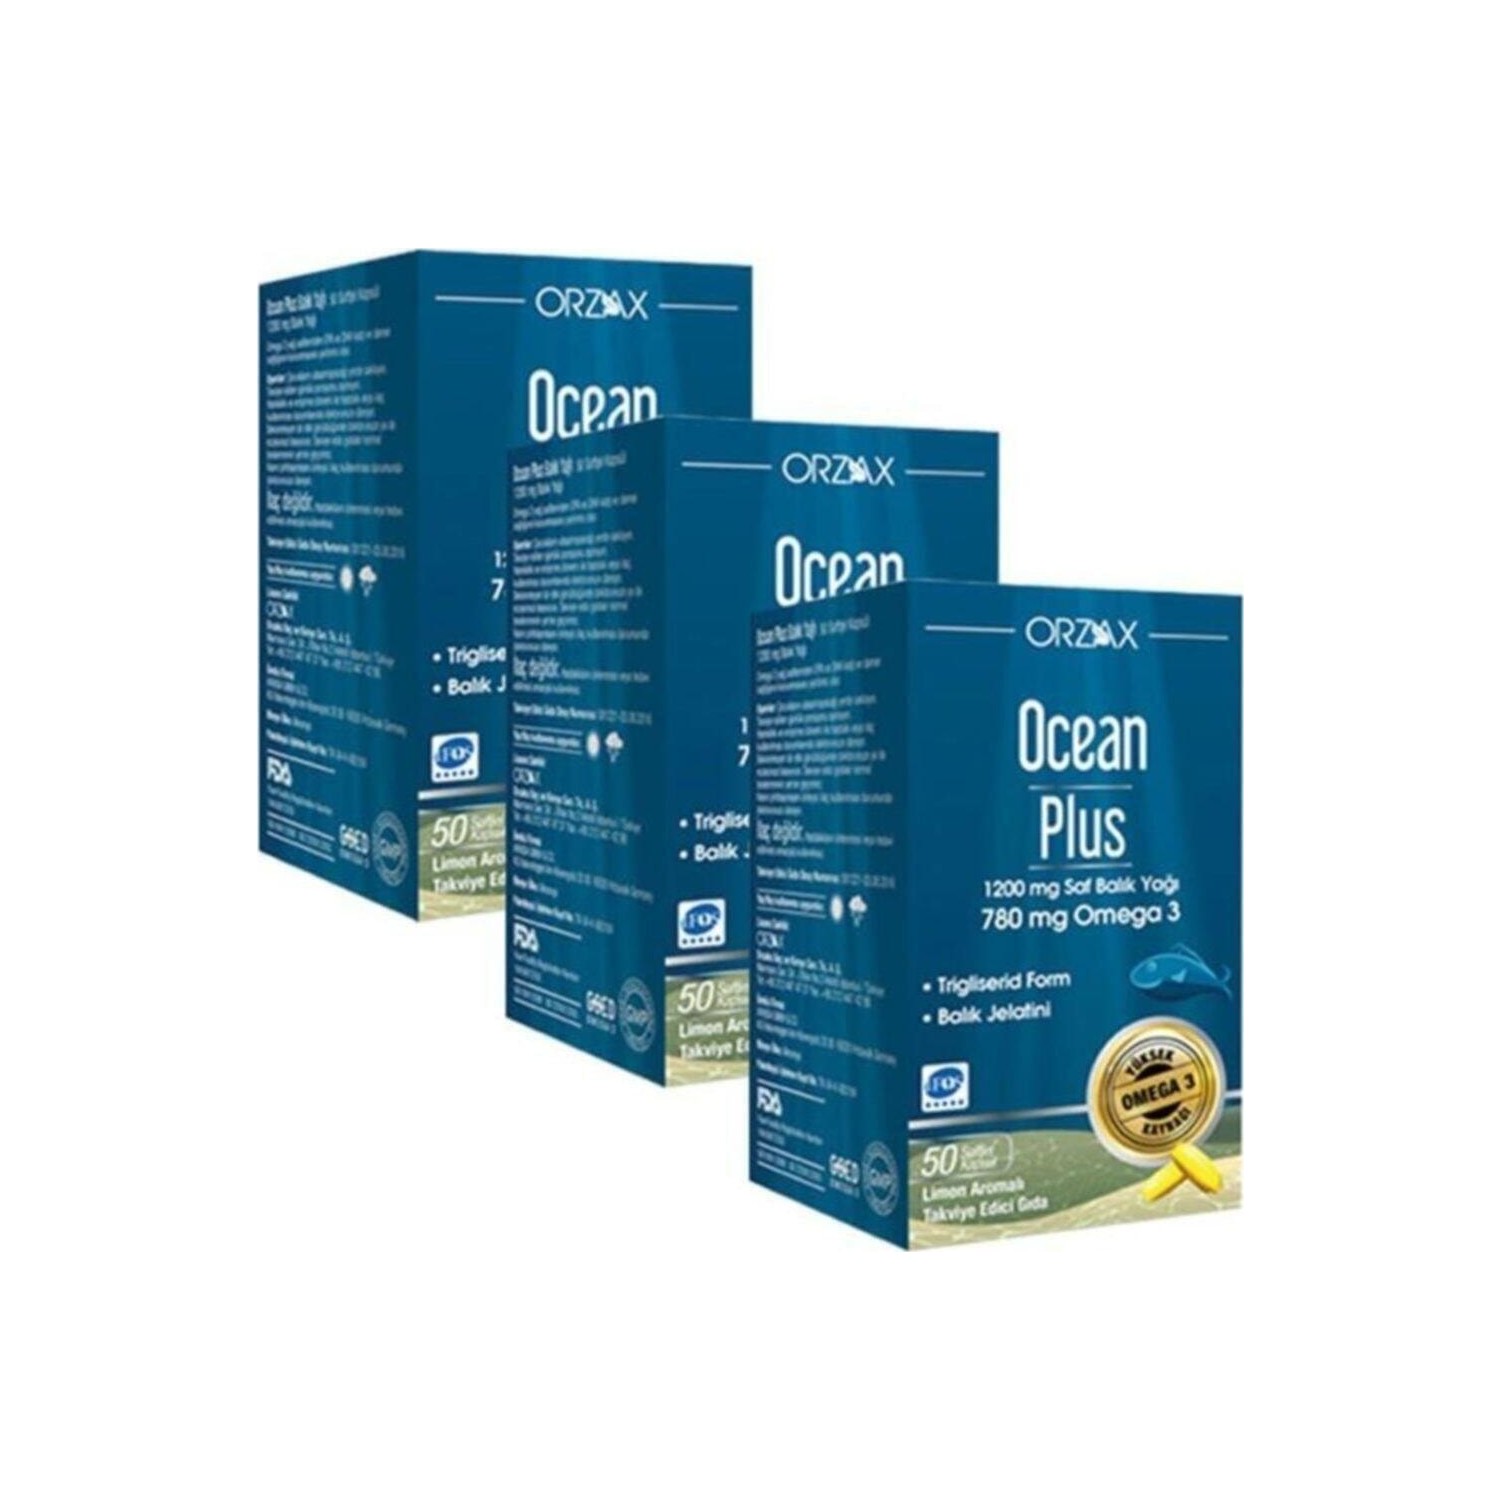 Омега-3 Plus Orzax 1200 мг, 3 упаковки по 50 капсул омега 3 nature’s bounty fish oil 1000 мг в капсулах 50 шт